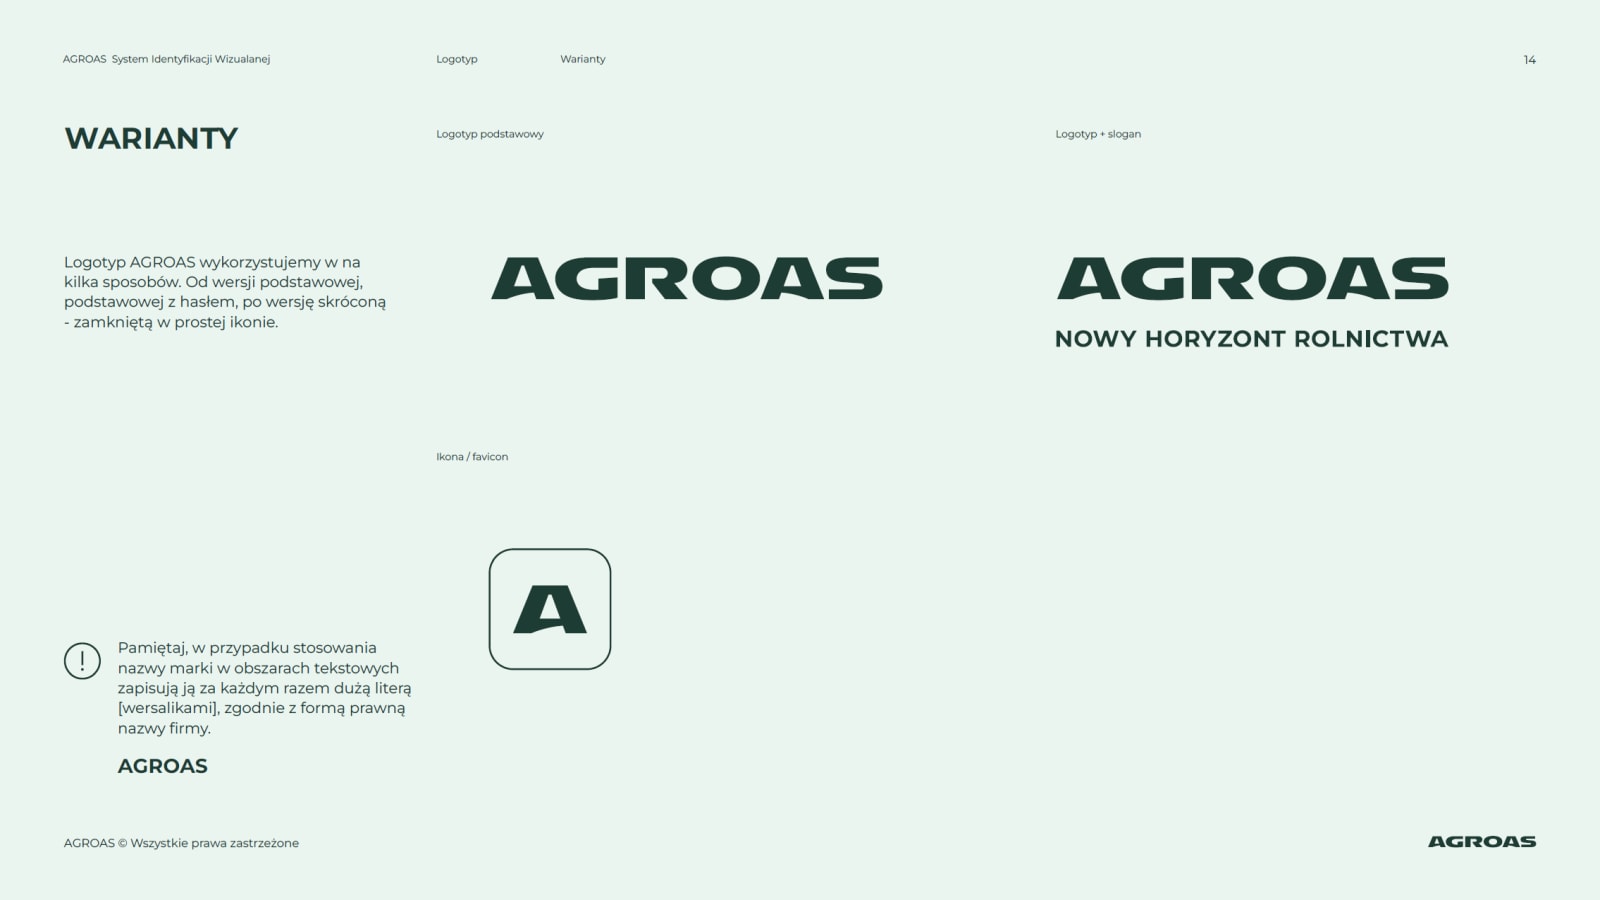 brandbook Agroas - wersje logo